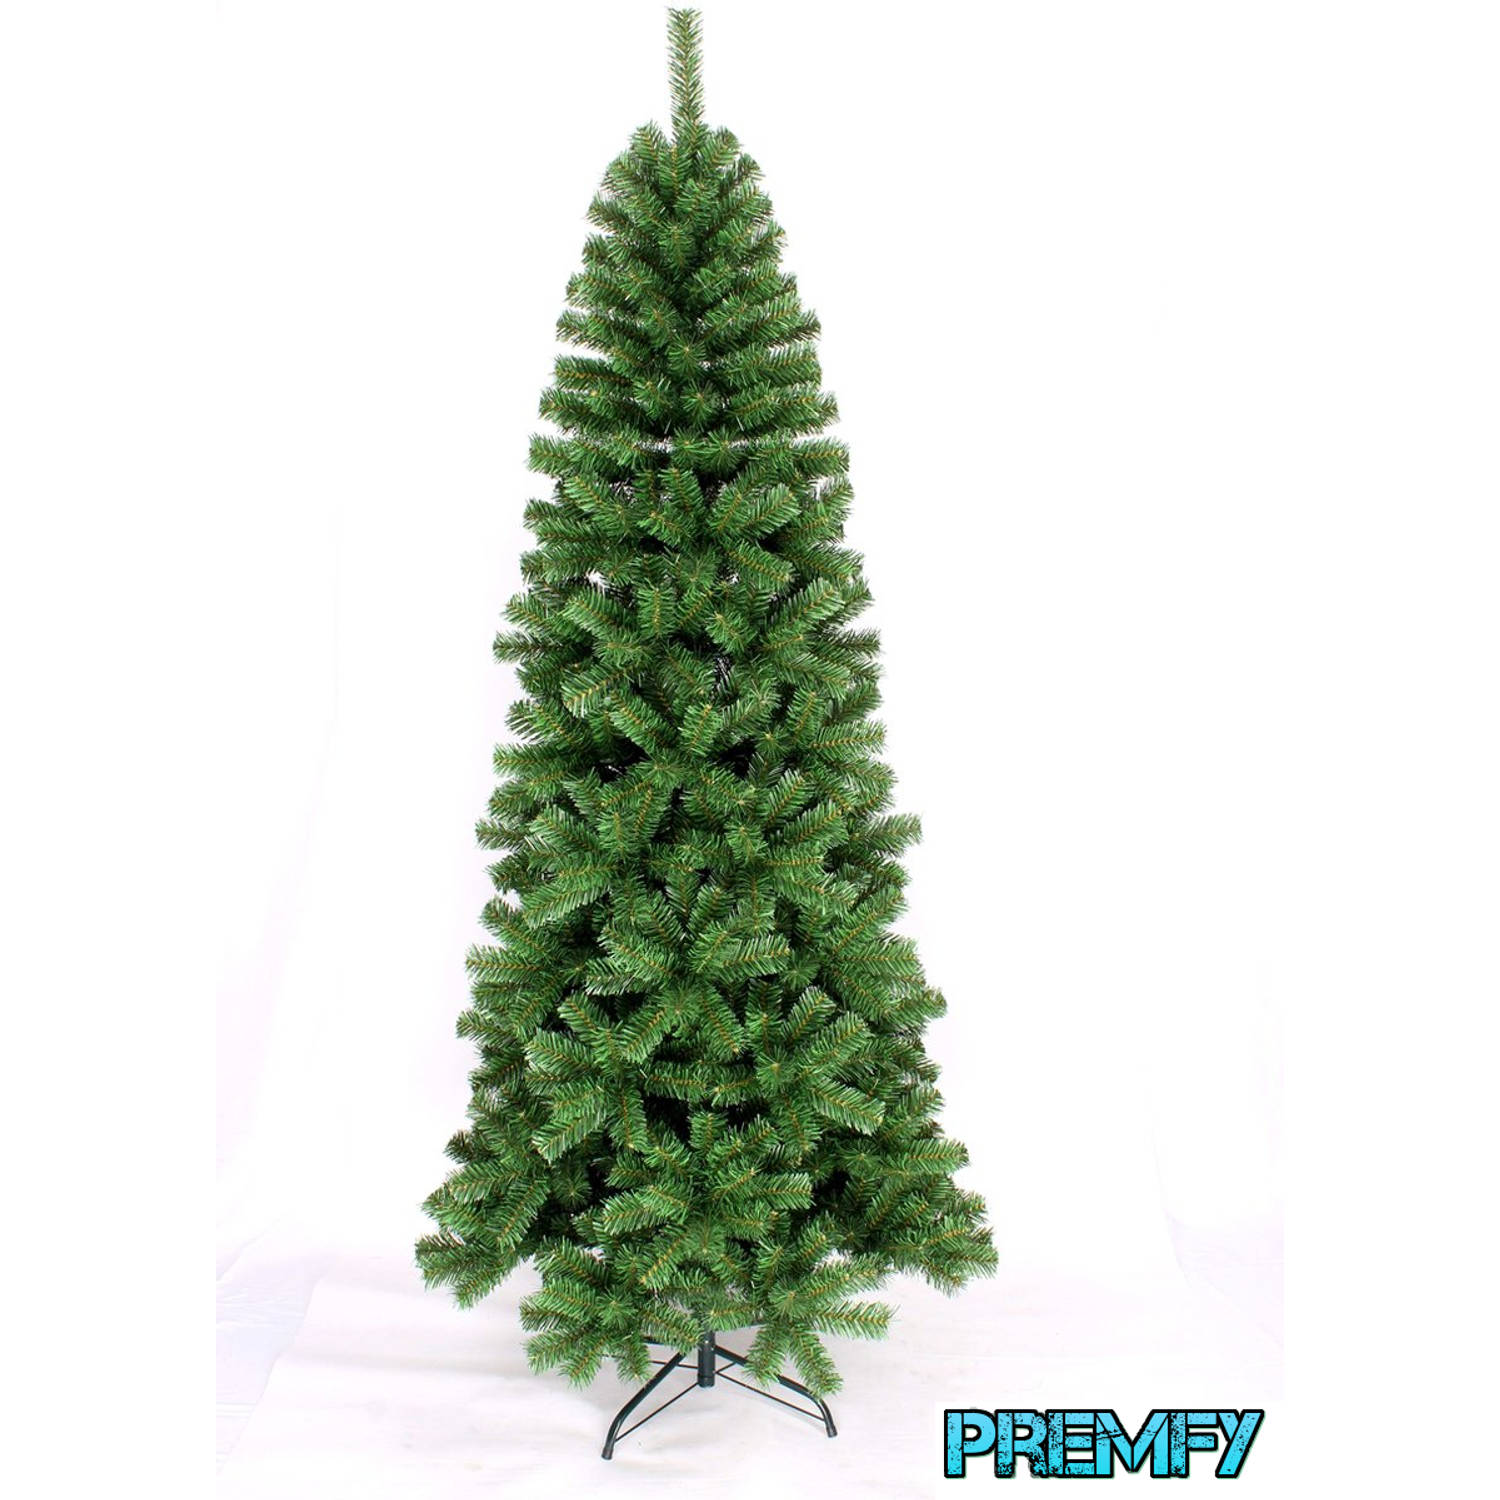 Premfy Smalle Kunstkerstboom 180cm met 550 takken - mooi vol - groen - zonder verlichting - Pencil Pine